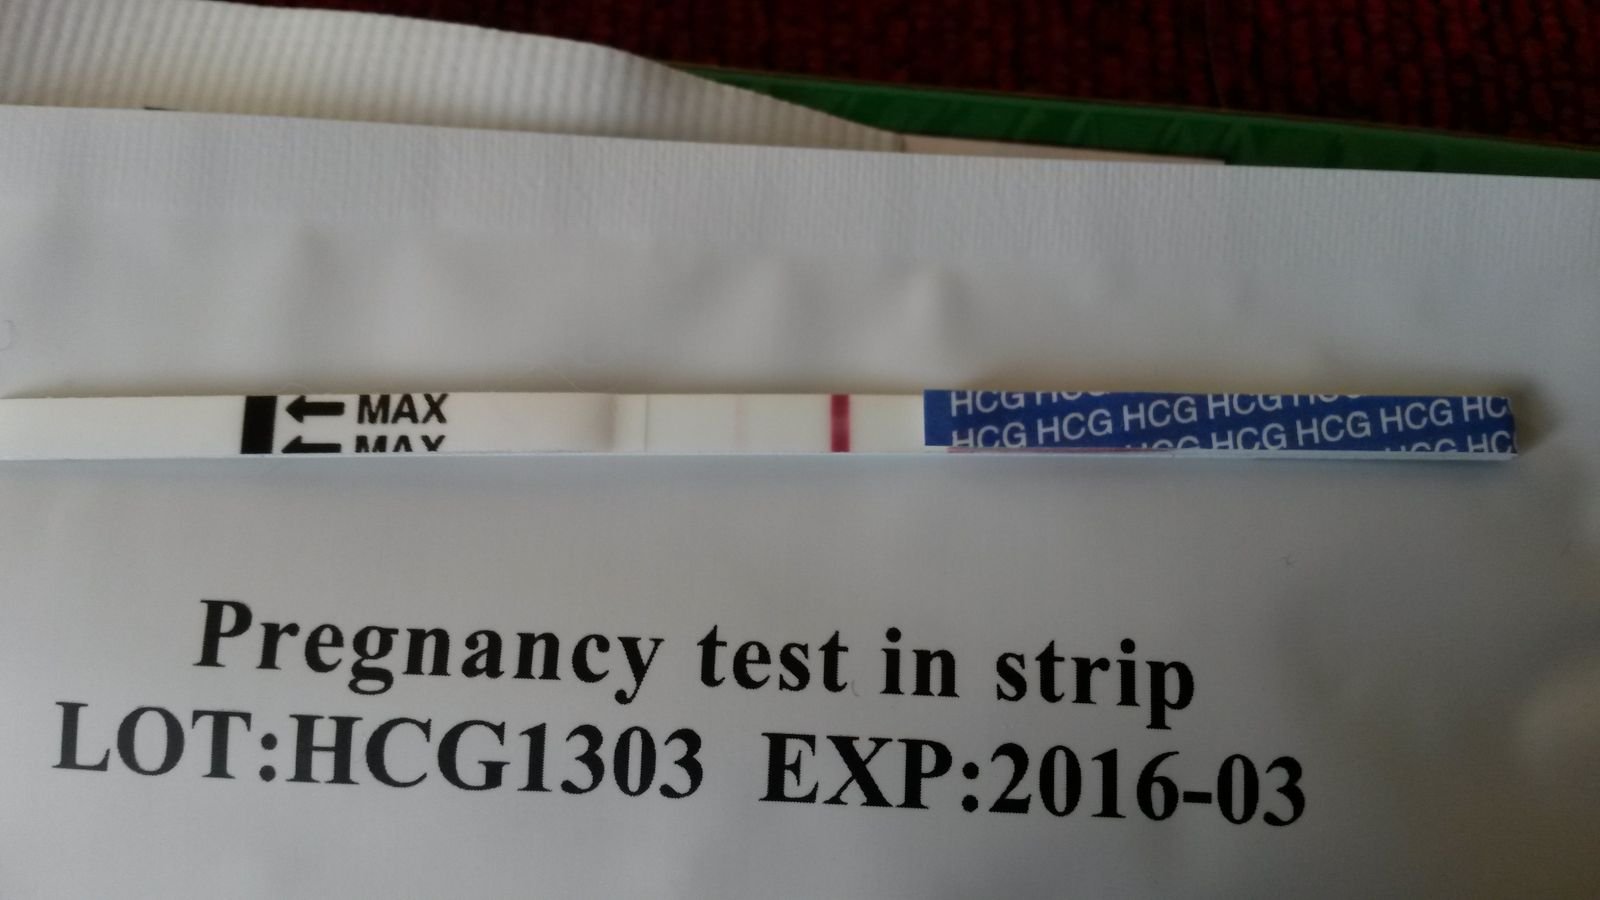 Отзывы о тесте на беременность